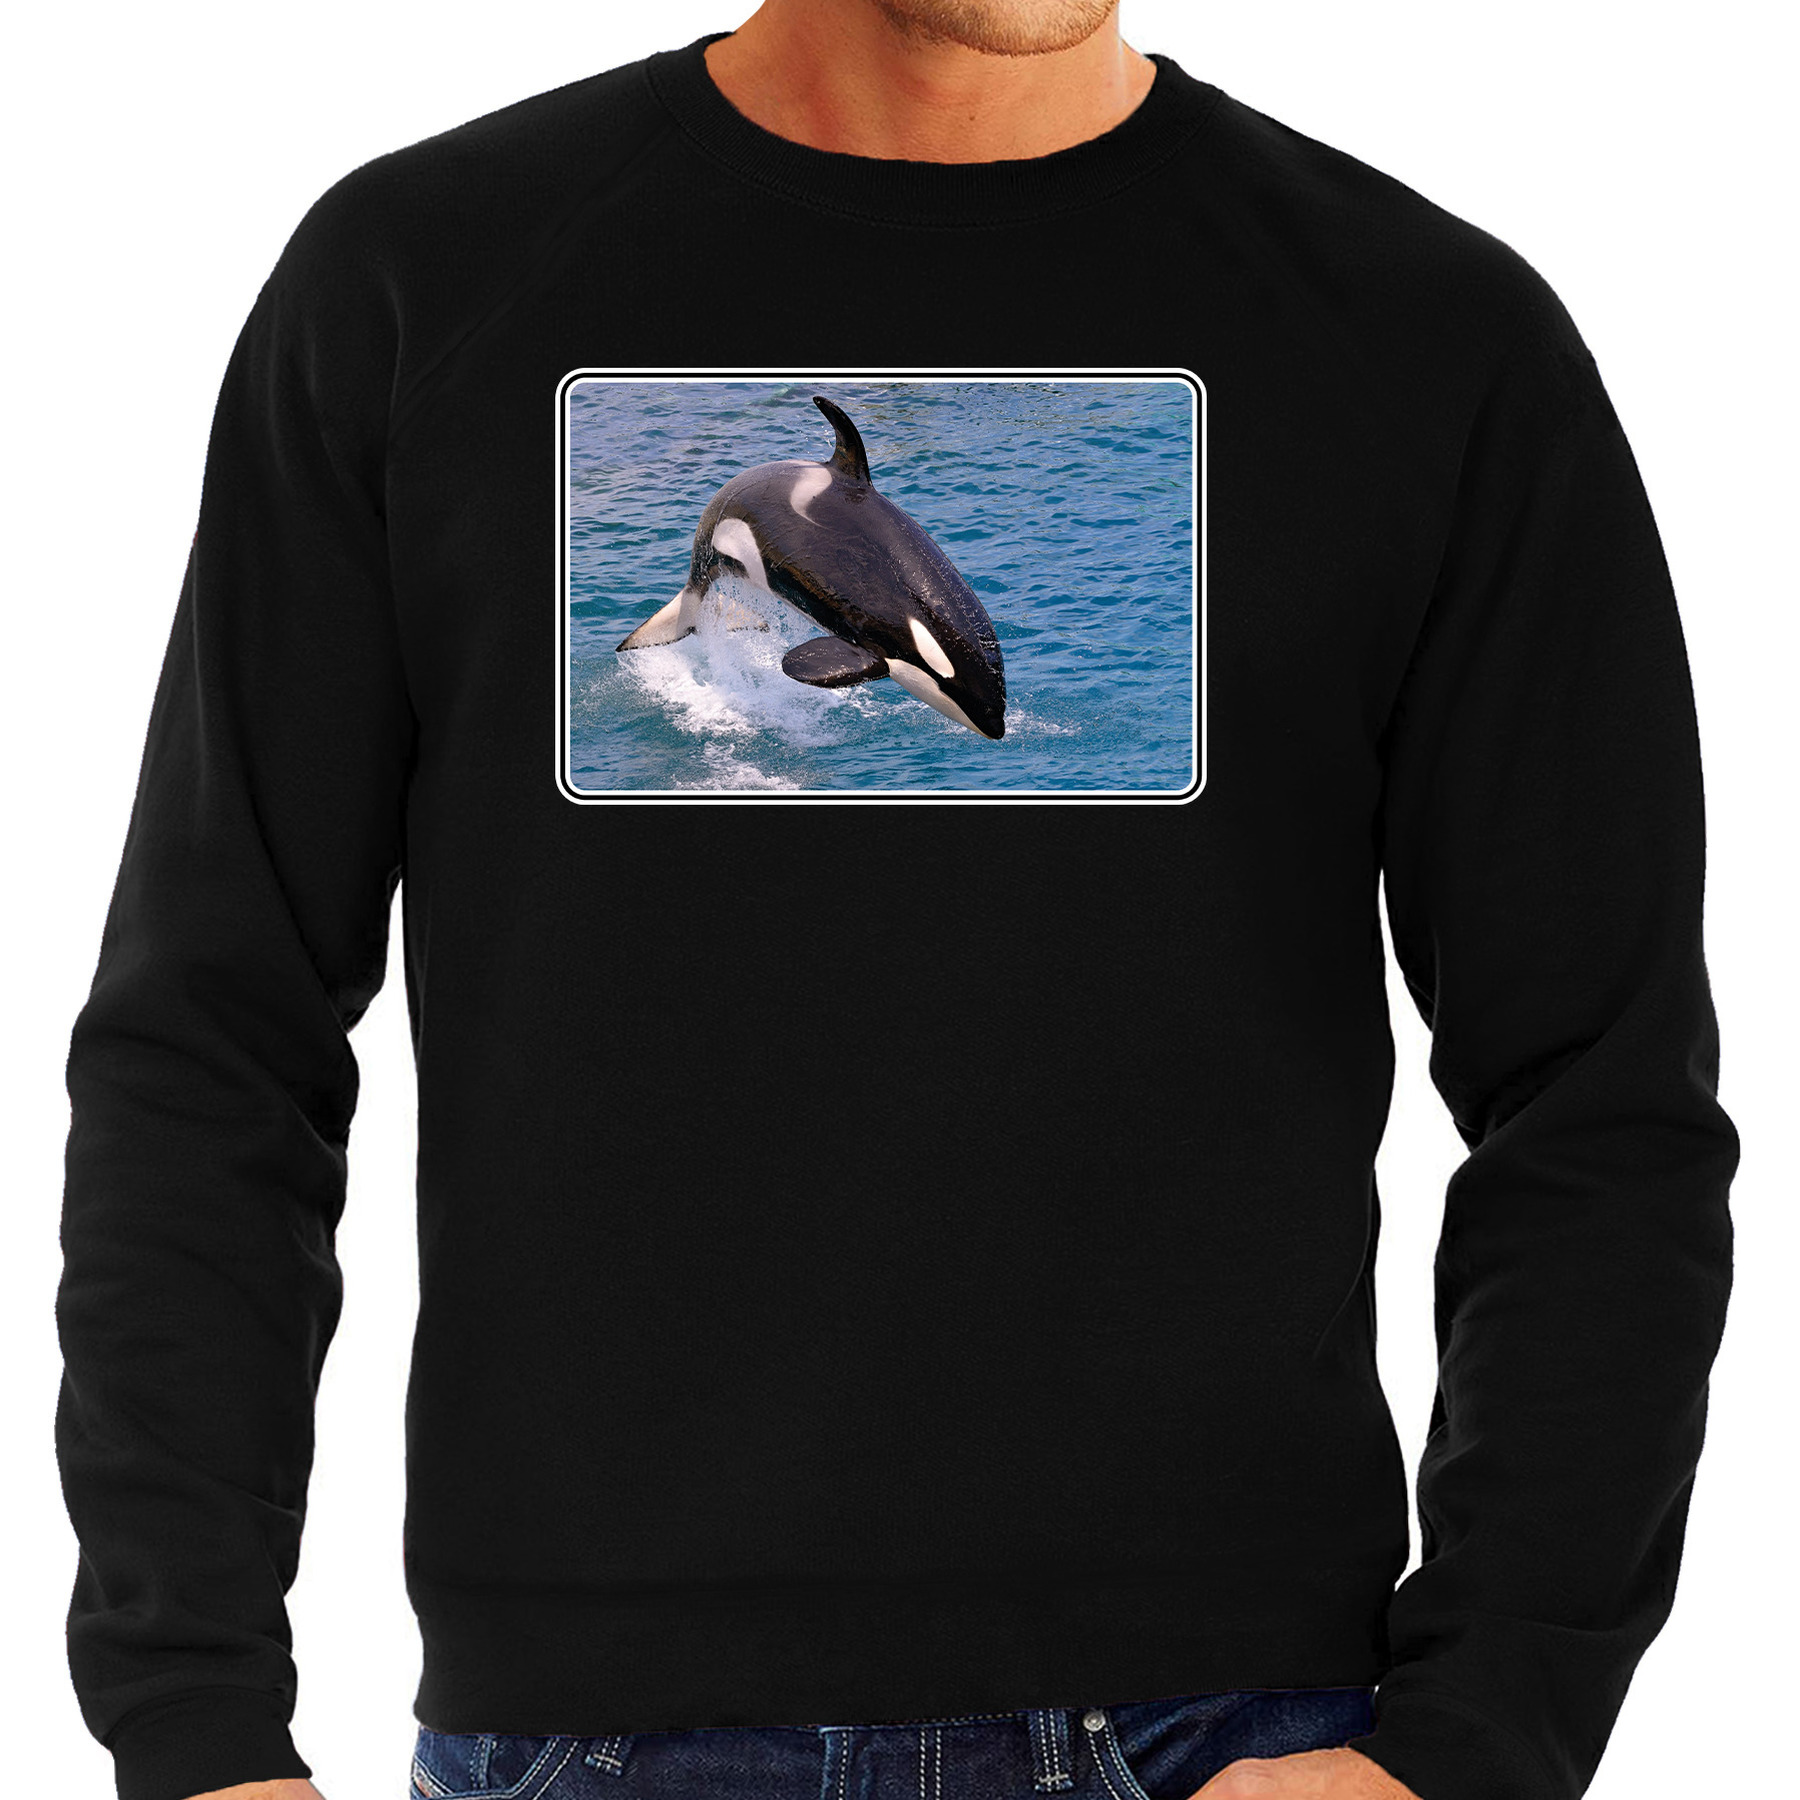 Dieren sweater / trui met orka walvissen foto zwart voor heren